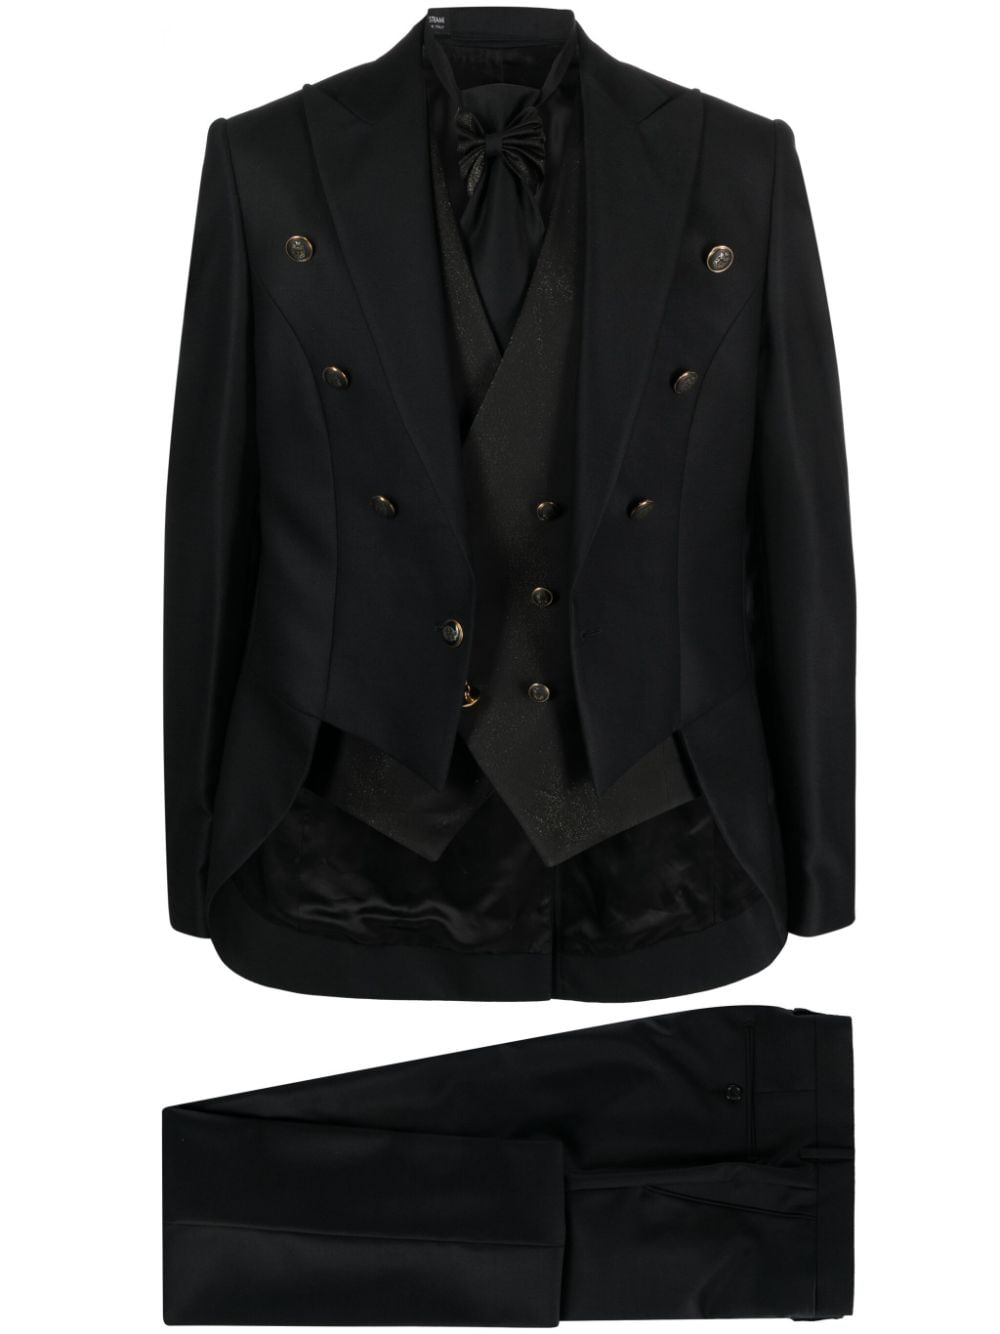 Reveres 1949 Single-breasted Wool Dinner Suit In Black